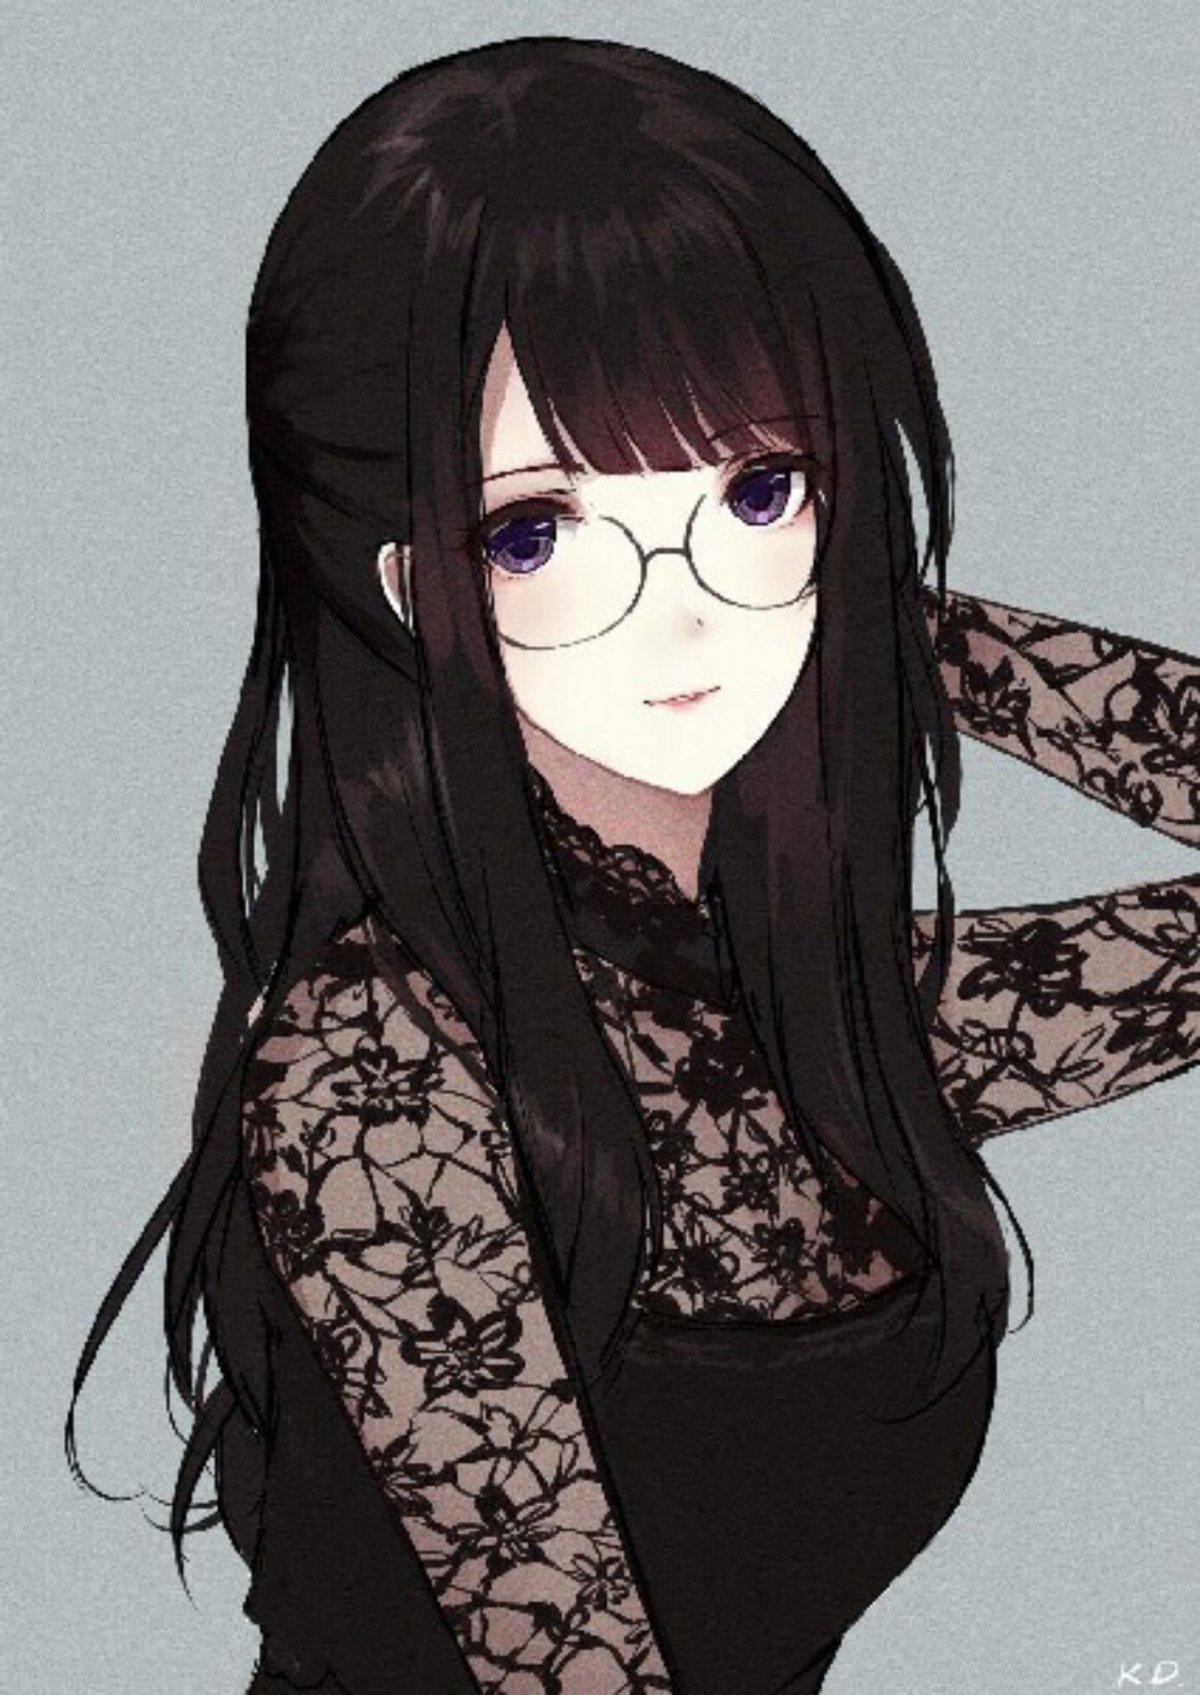 Anime Art Girl Black Hair